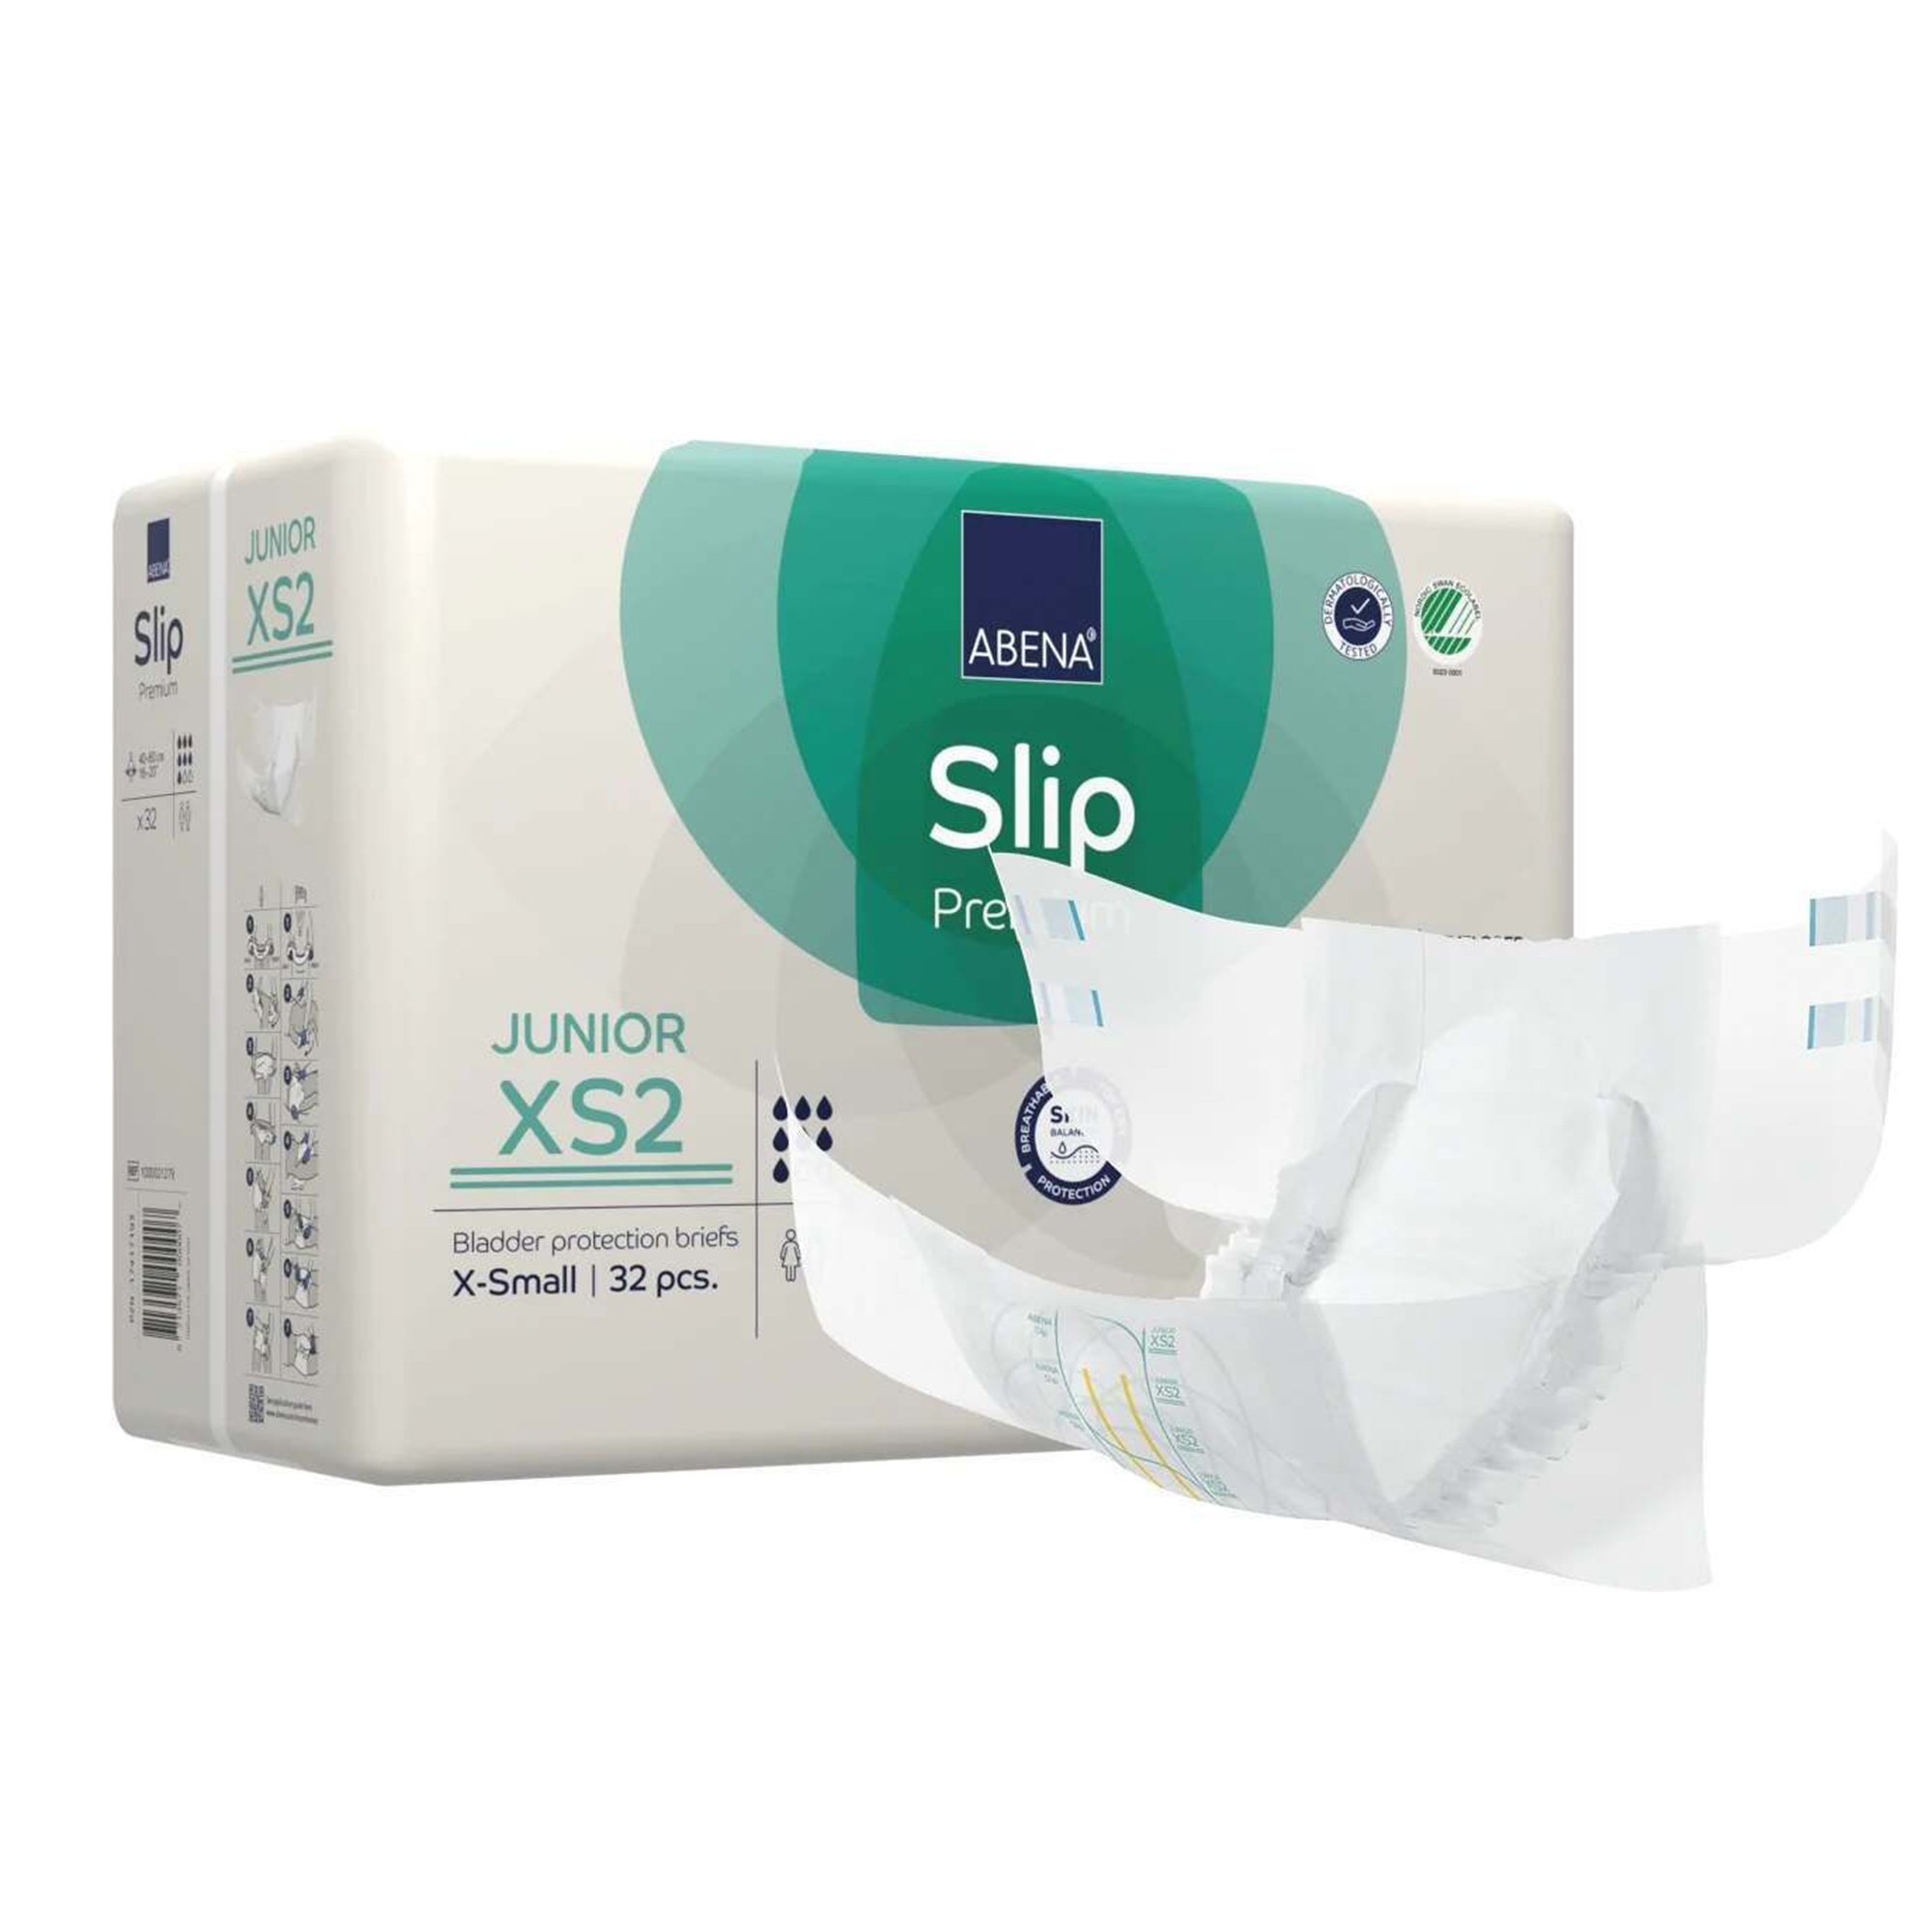 Abena Slip Premium Junior XS2 Disposable Brief, Heavy - Simply Medical